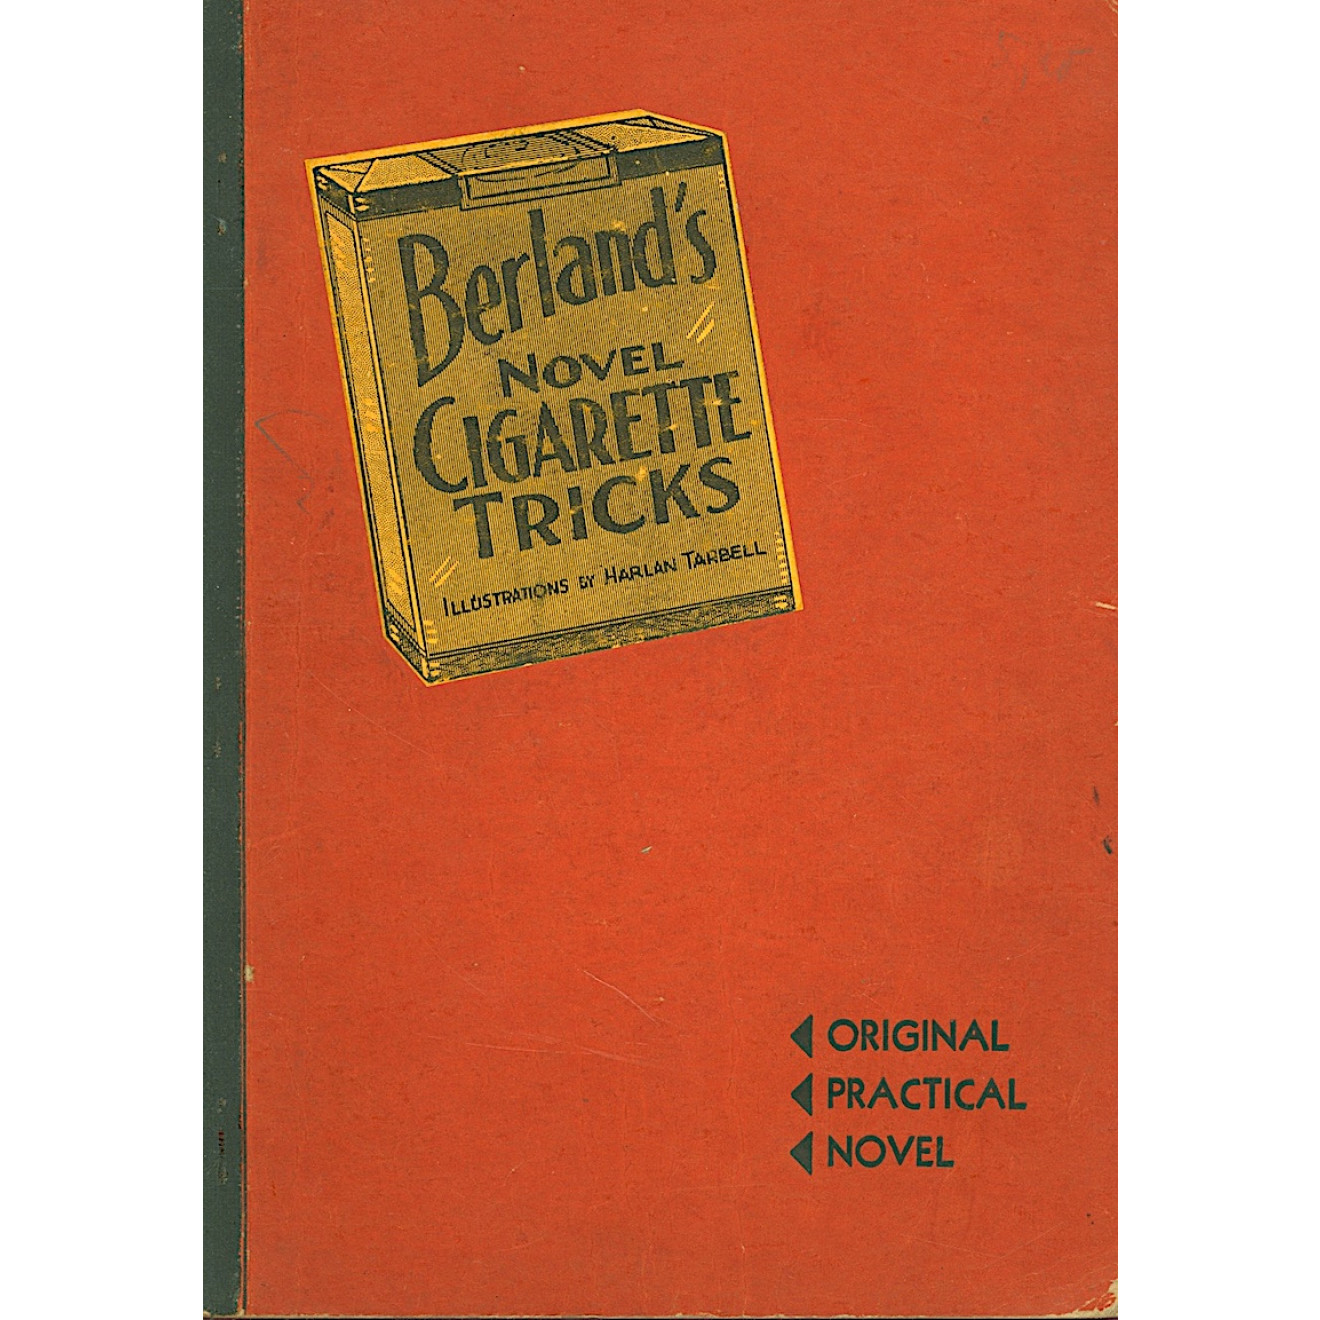 Berland's Novel Cigarette Tricks